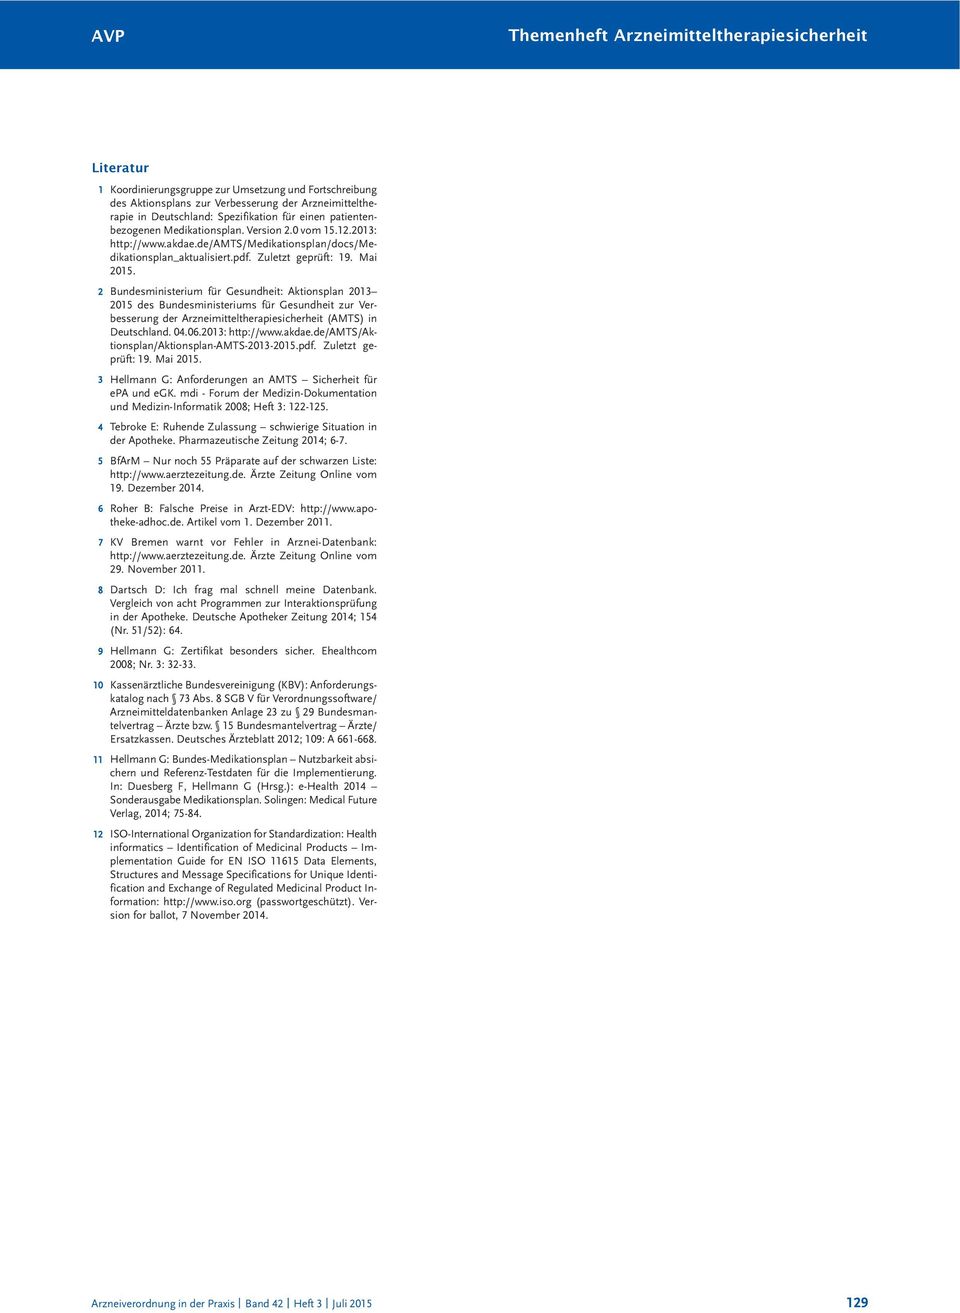 2 Bundesministerium für Gesundheit: Aktionsplan 2013 2015 des Bundesministeriums für Gesundheit zur Verbesserung der Arzneimitteltherapiesicherheit (AMTS) in Deutschland. 04.06.2013: http://www.akdae.